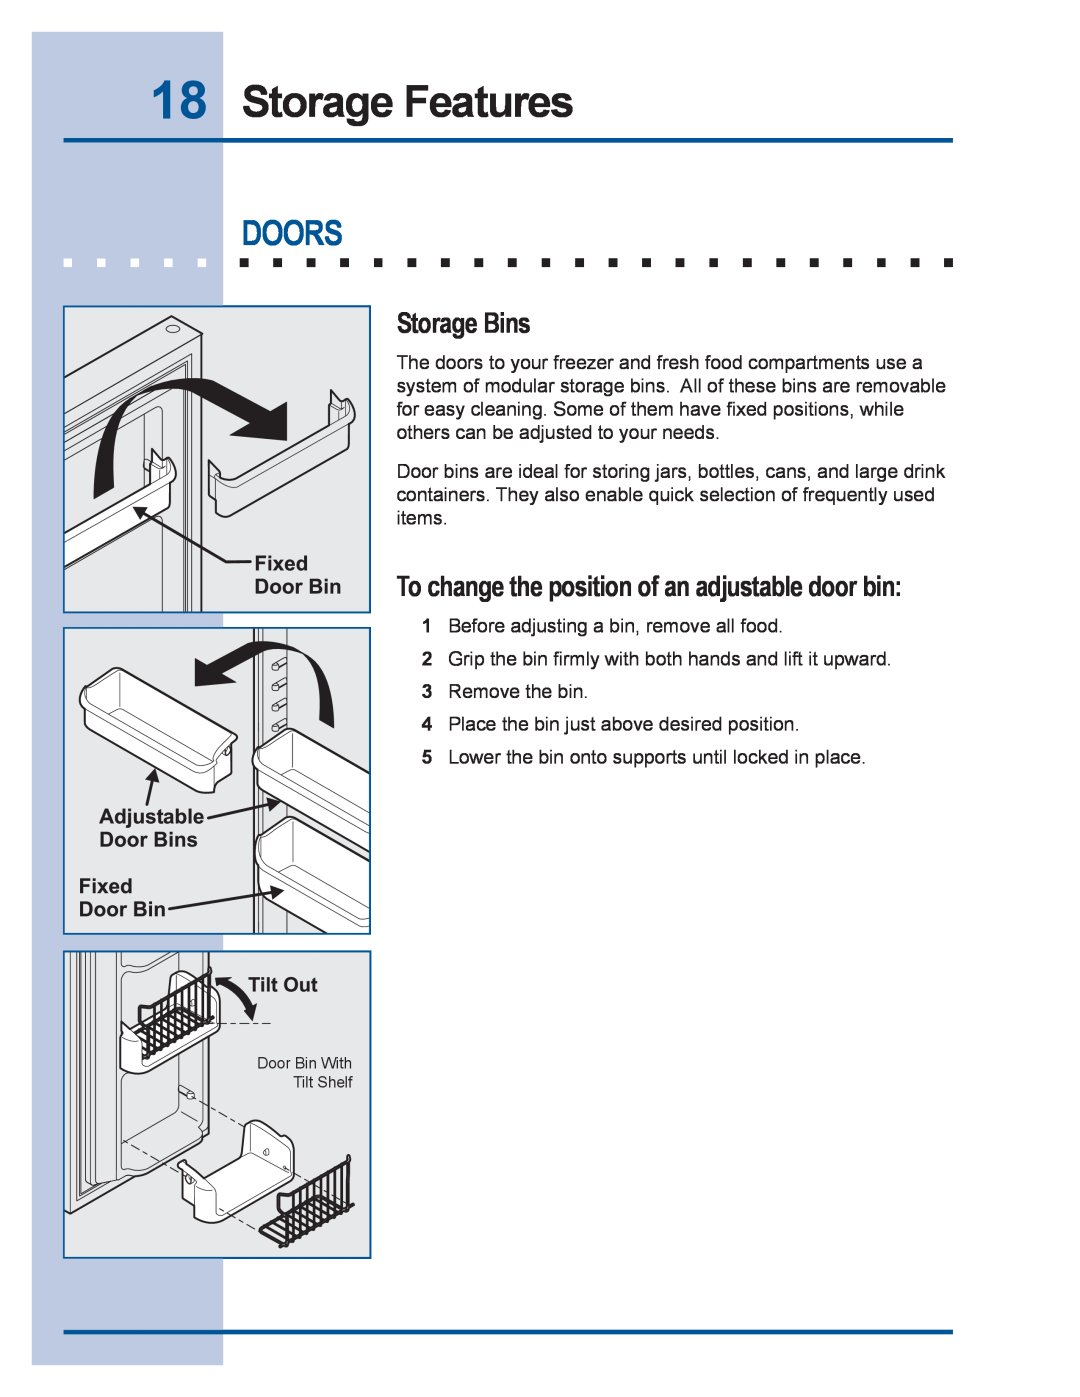 Electrolux 241540102 manual Doors, Storage Bins, Storage Features, To change the position of an adjustable door bin 